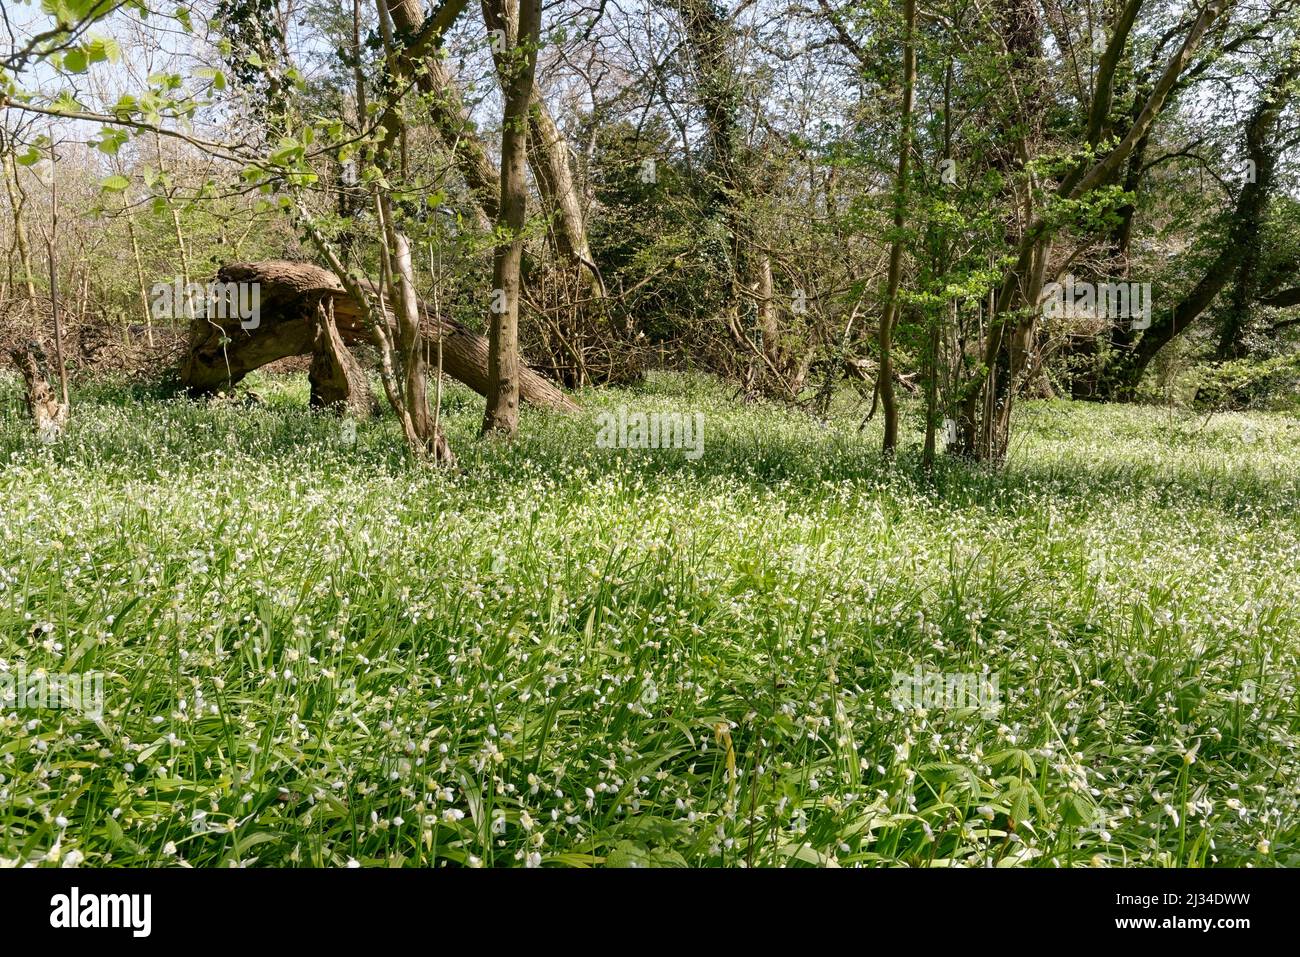 Leek à fleurs rares (Allium paradoxum) une espèce très envahissante, qui pousse dans un tapis dense et étouffant dans les bois, Claverton Down, Bath, Royaume-Uni, avril. Banque D'Images